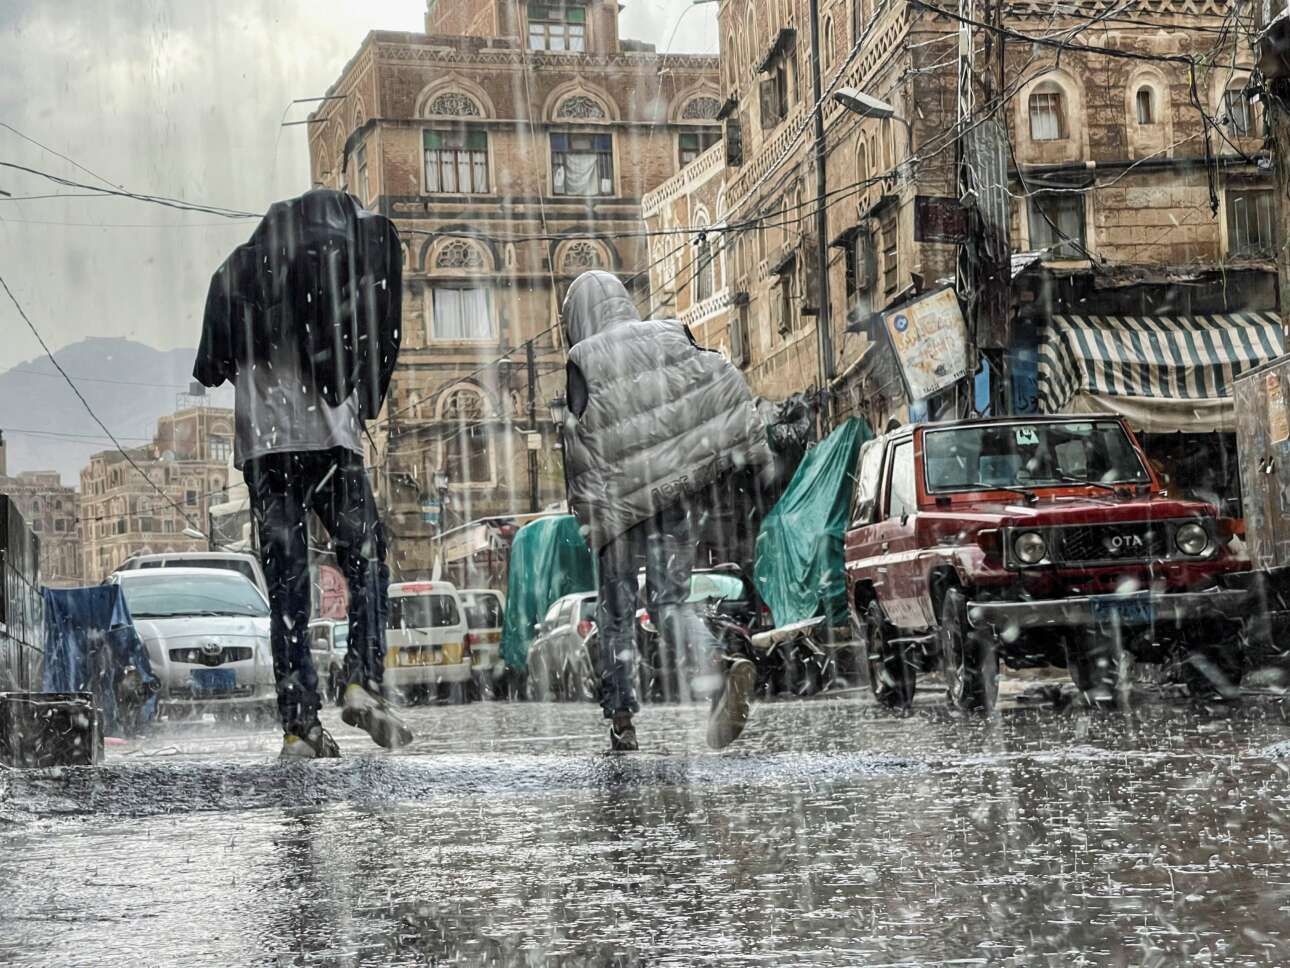 Στον καταραμένο τόπο Μάη μήνα βρέχει, και για Ιούνιο δεν το συζητάμε καν: καρέ από την πρωτεύουσα της Υεμένης Σαναά όπου «η βρόχα έπεφτε στρέιτ θρου», λες και την έστειλε από τον άλλον κόσμο ο πλακατζής Ζαμπέτας  